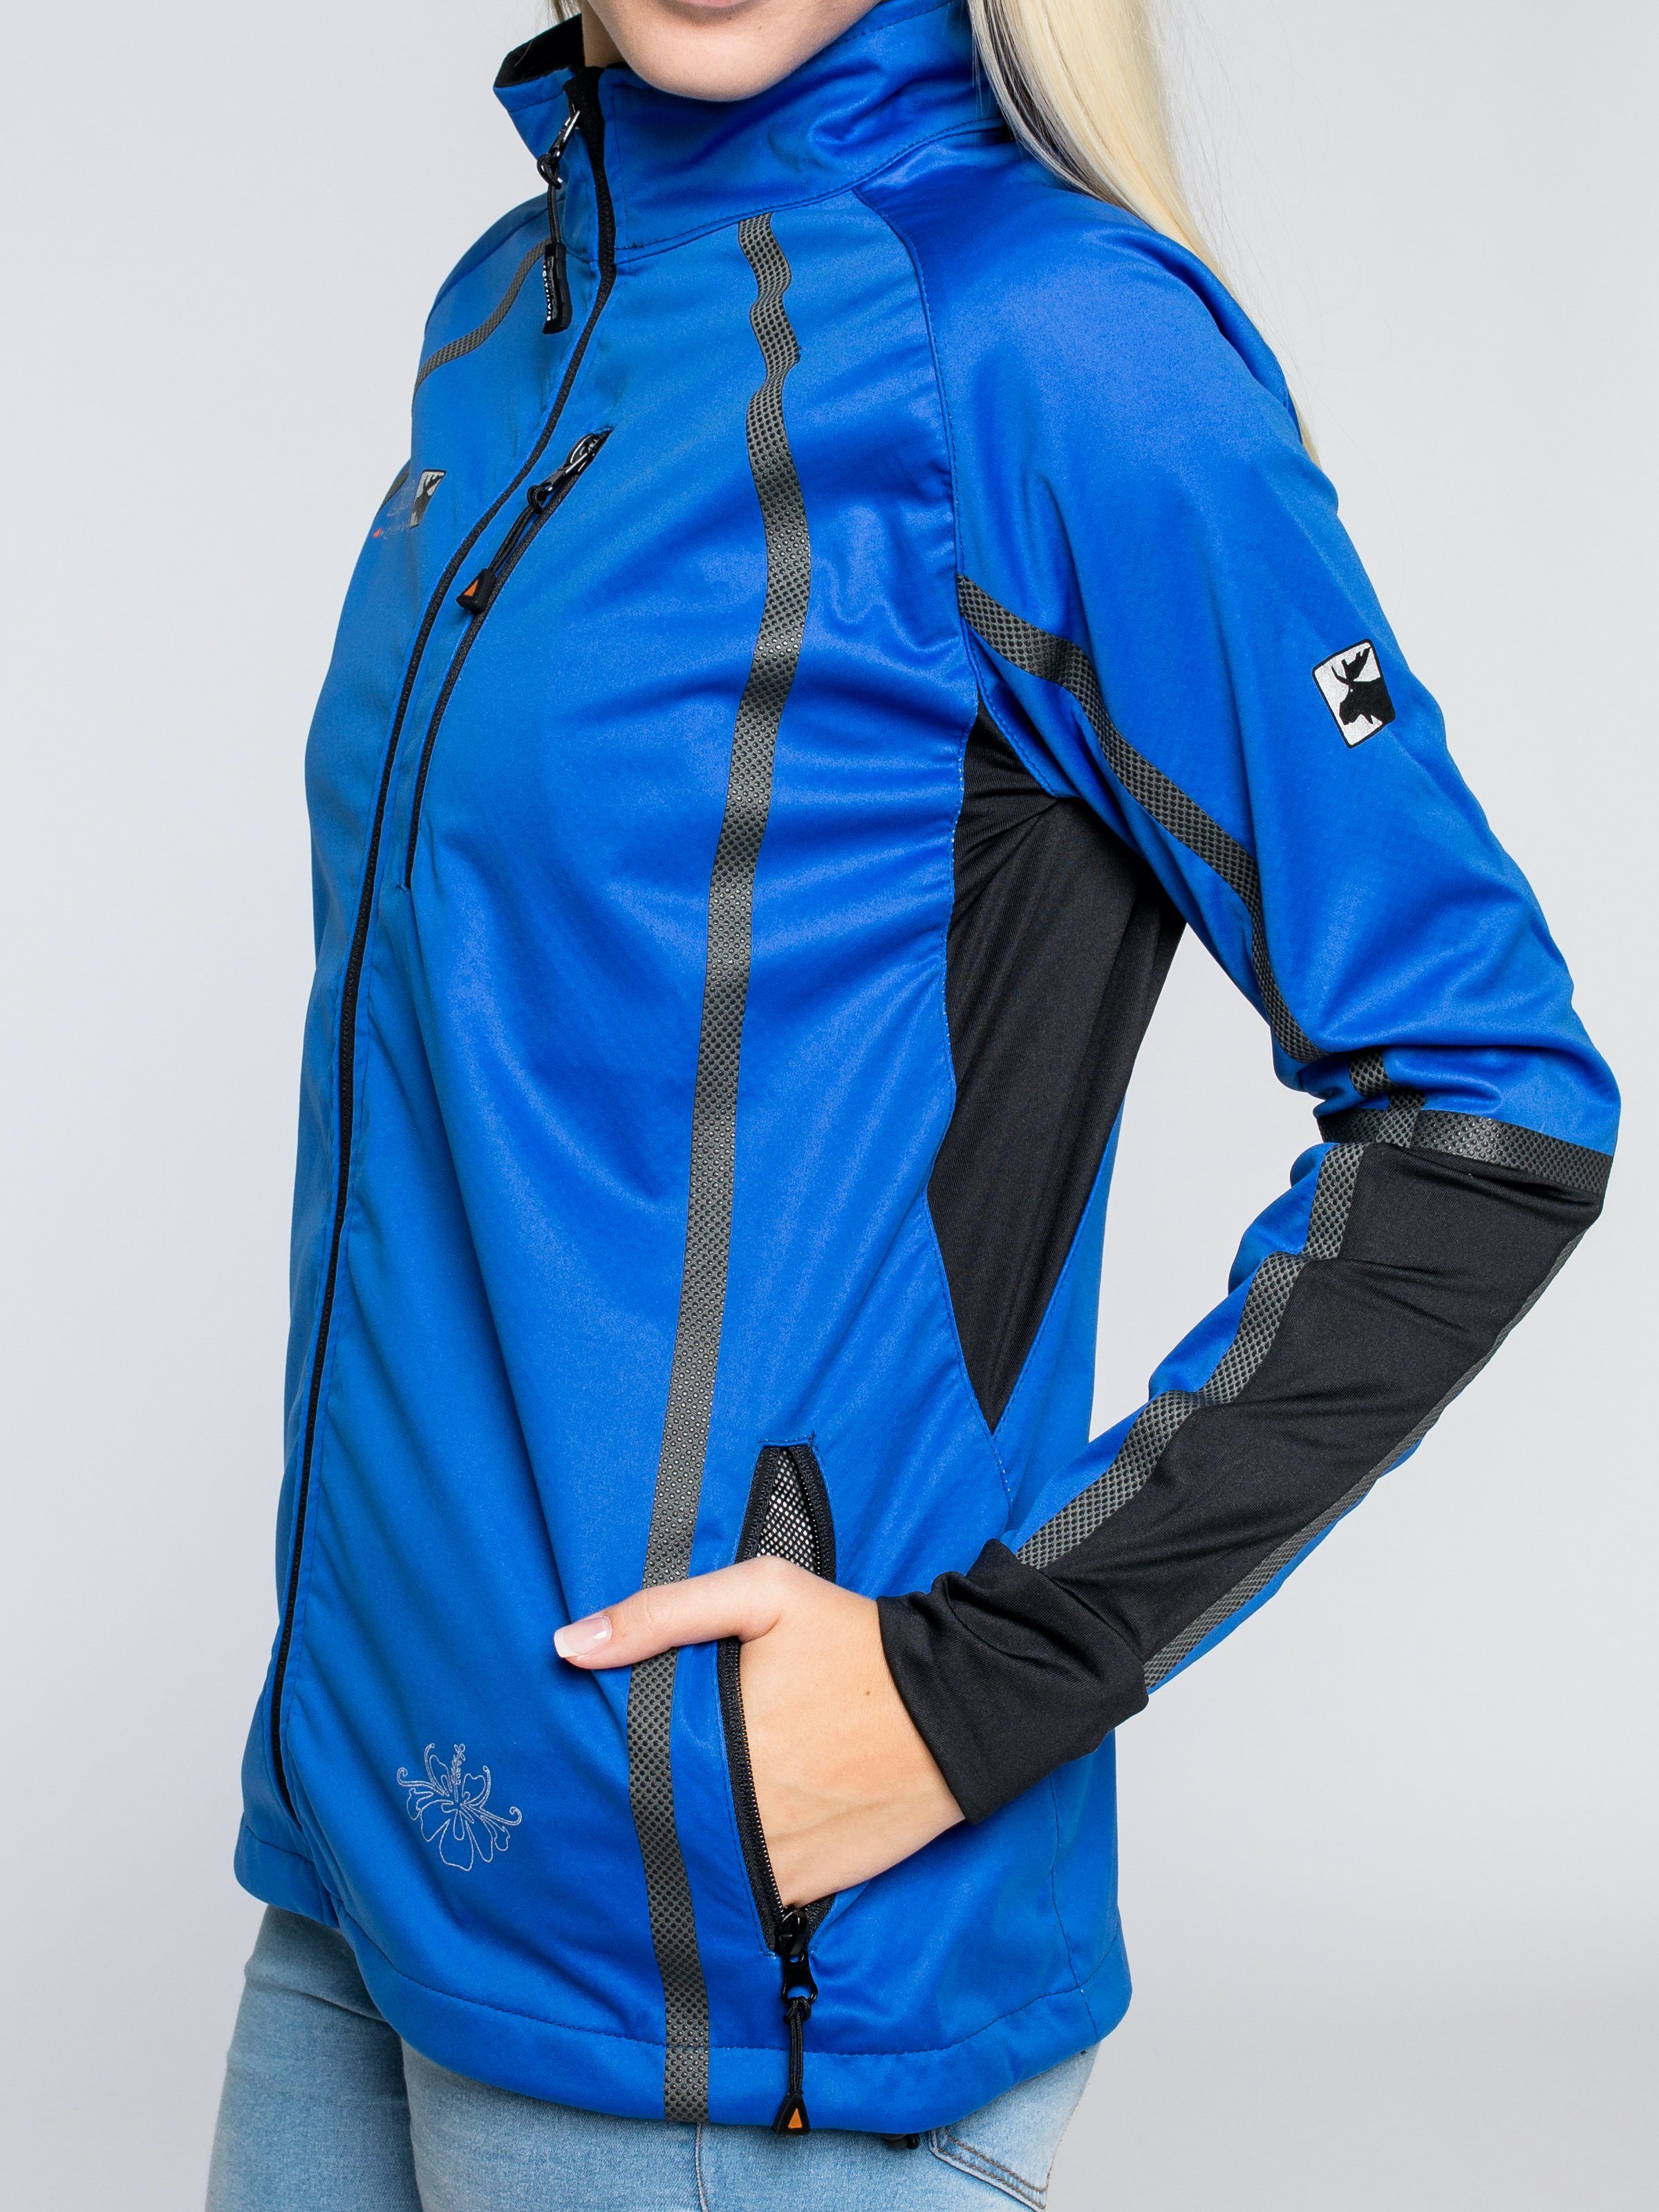 DEPROC Active Softshelljacke THORSBY NEW Ärmeleinsätzen Mid-layer Women CS Mit blue sportlichen